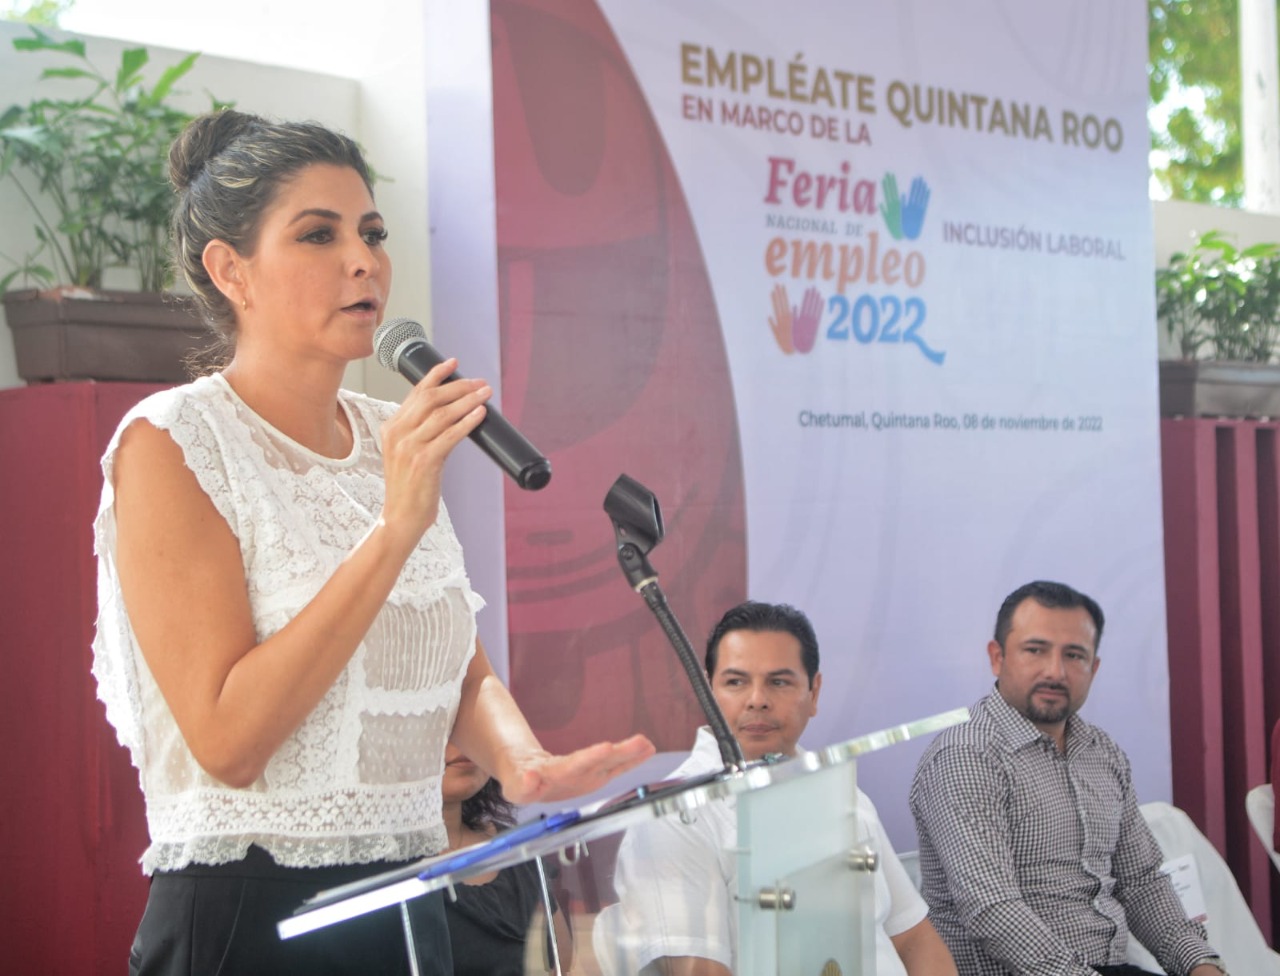 Destaca Mara Lezama segundo lugar nacional de Quintana Roo en generación de empleos